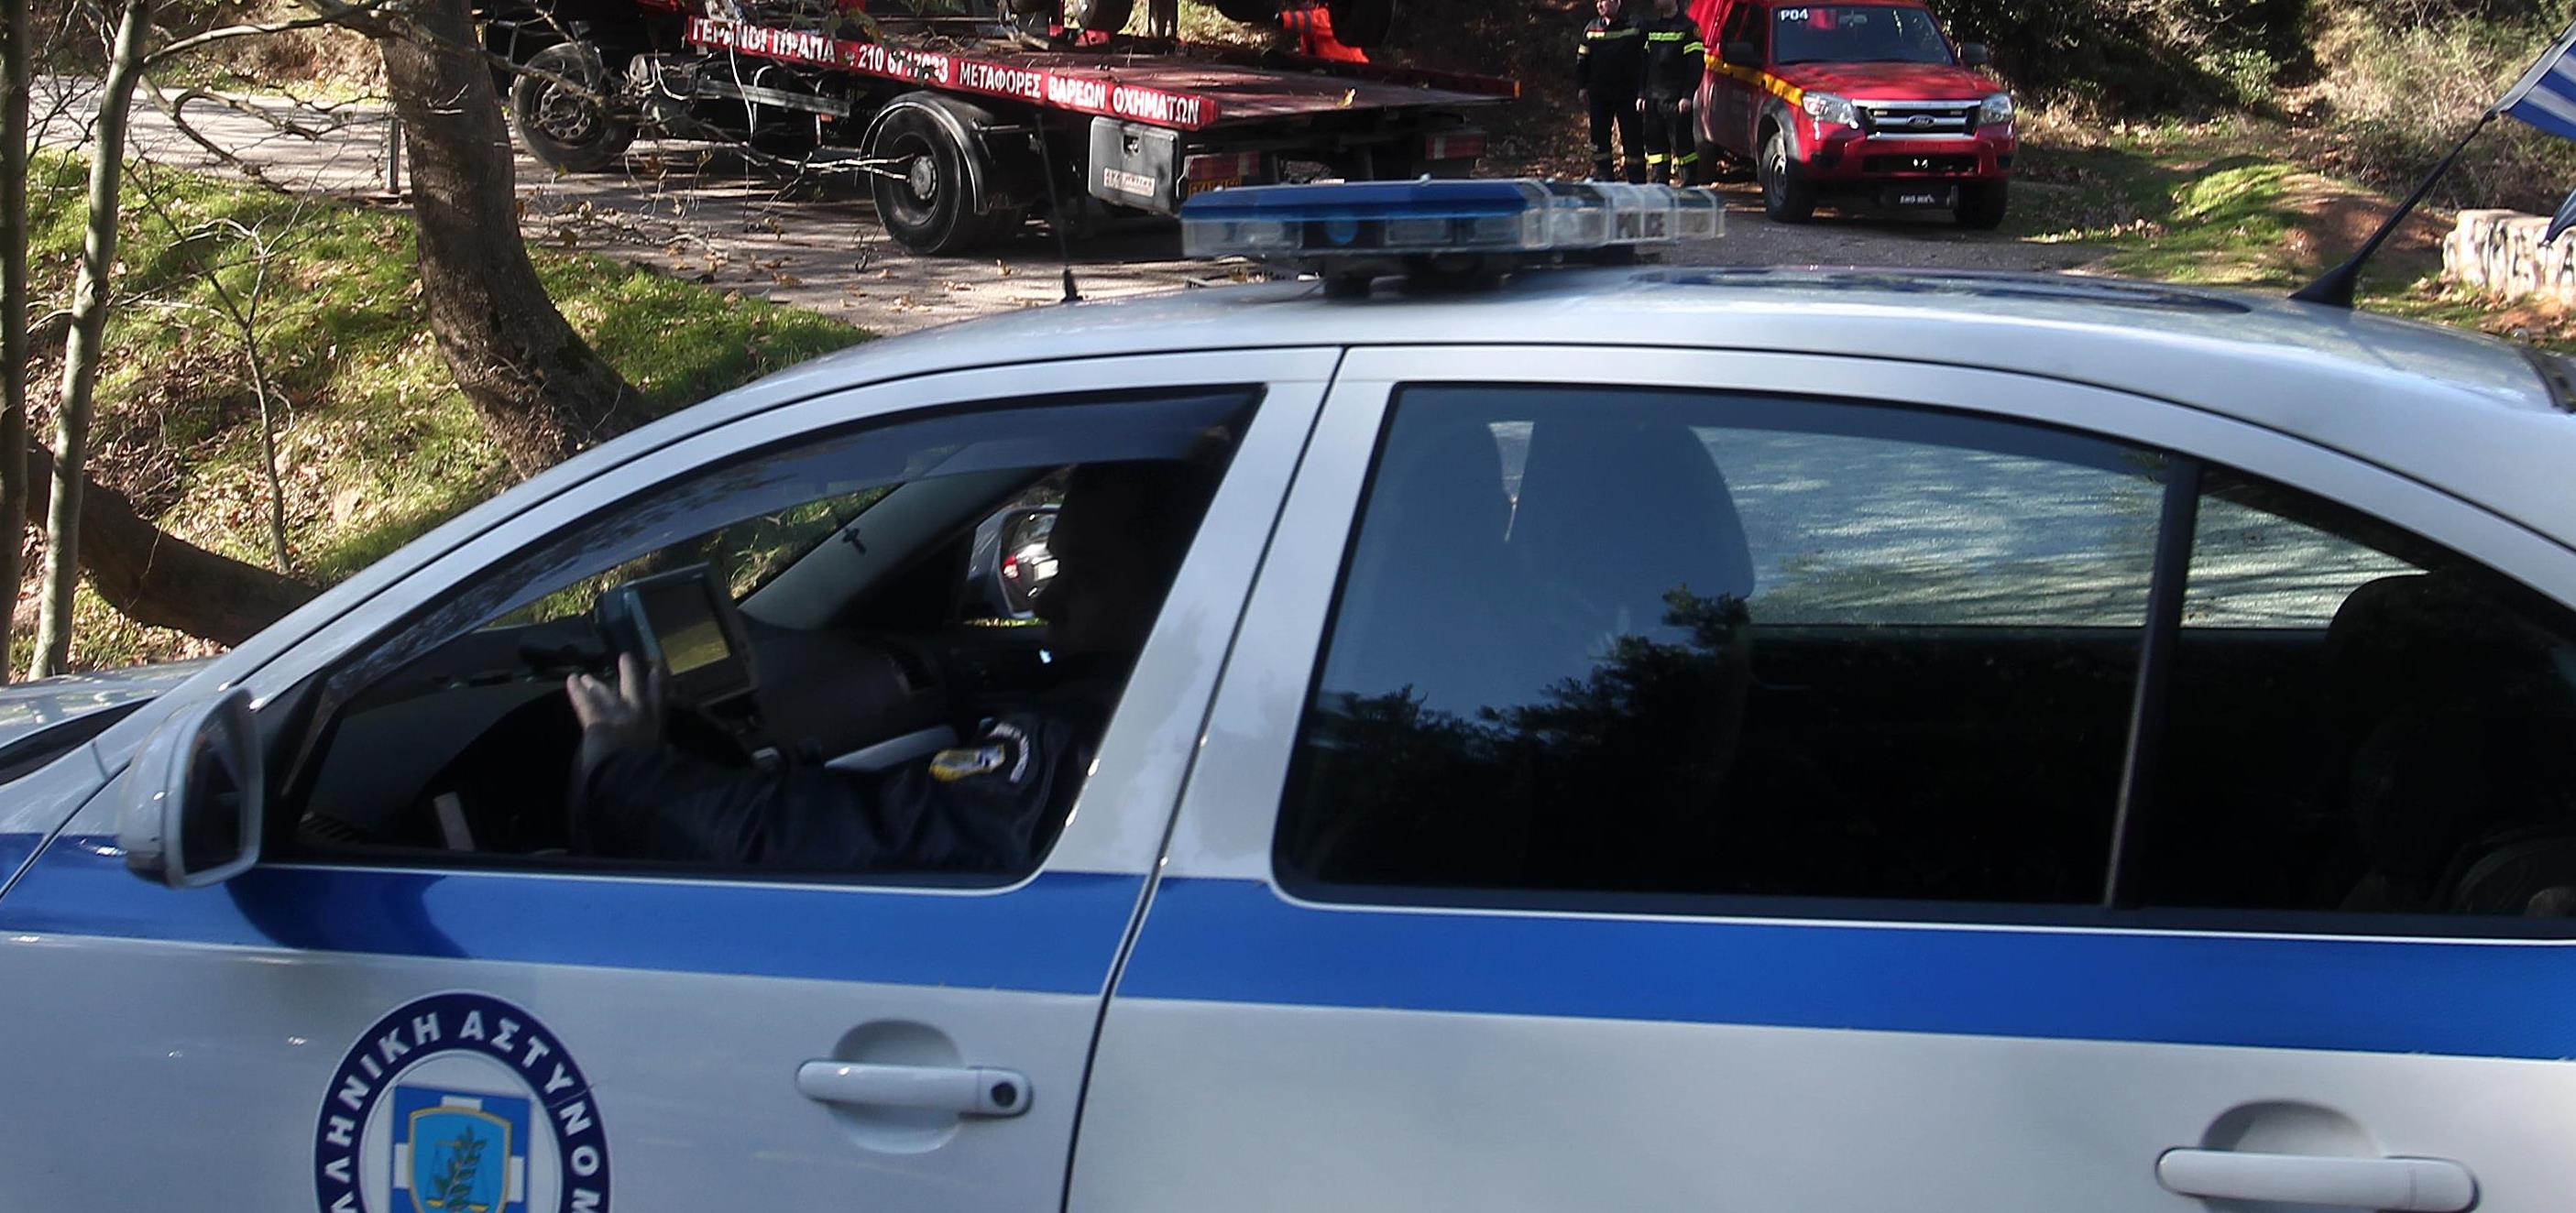 Σοβαρά τραυματισμένος στο θώρακα ο οδηγός ταξί που δολοφονήθηκε στη Δραπετσώνα